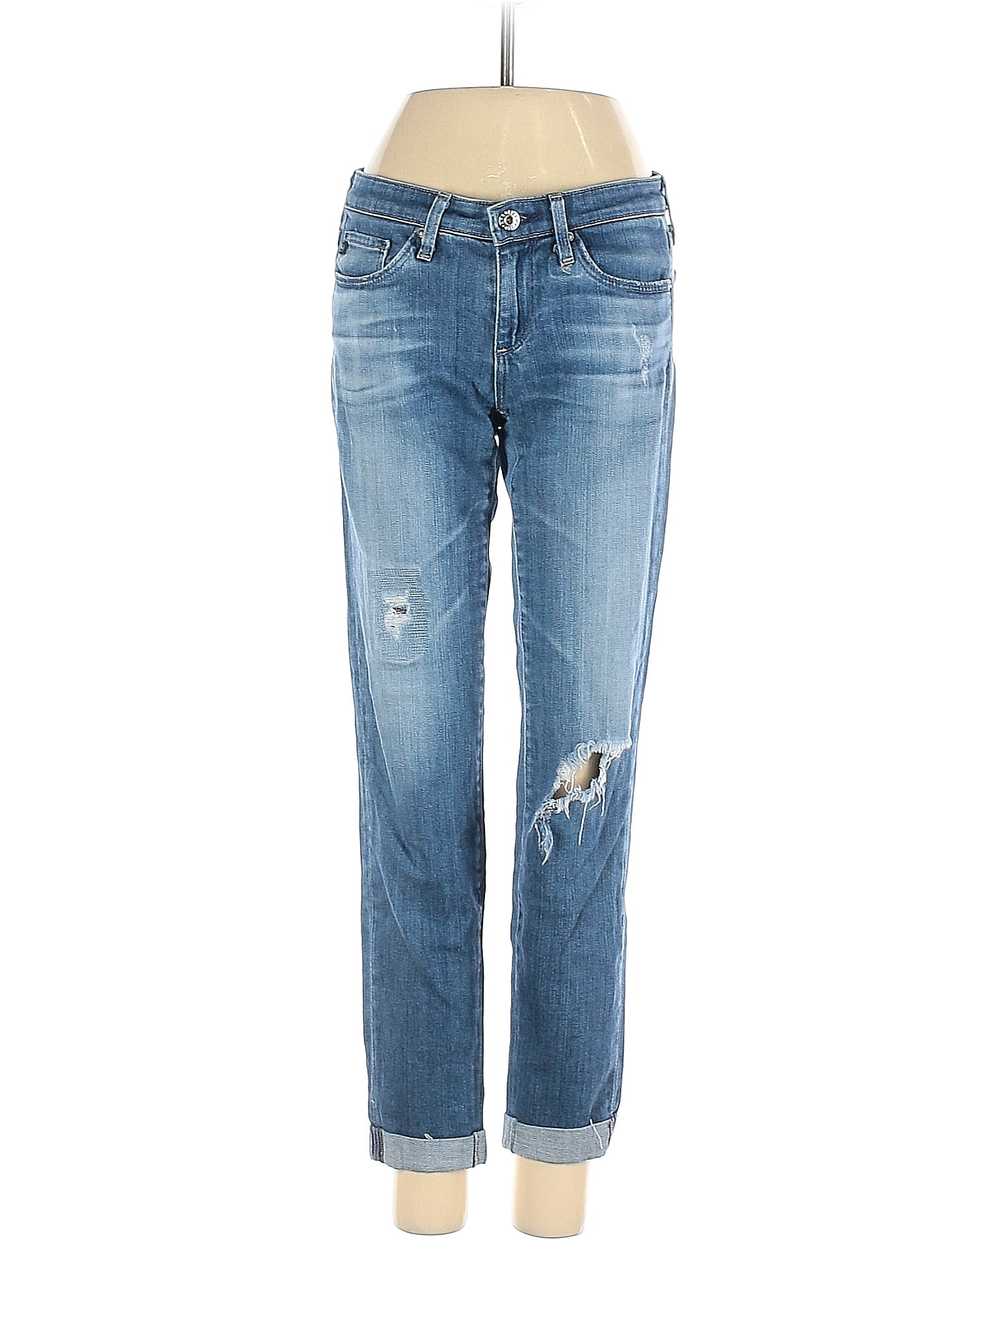 Adriano Goldschmied Women Blue Jeans 24 W Petites - image 1